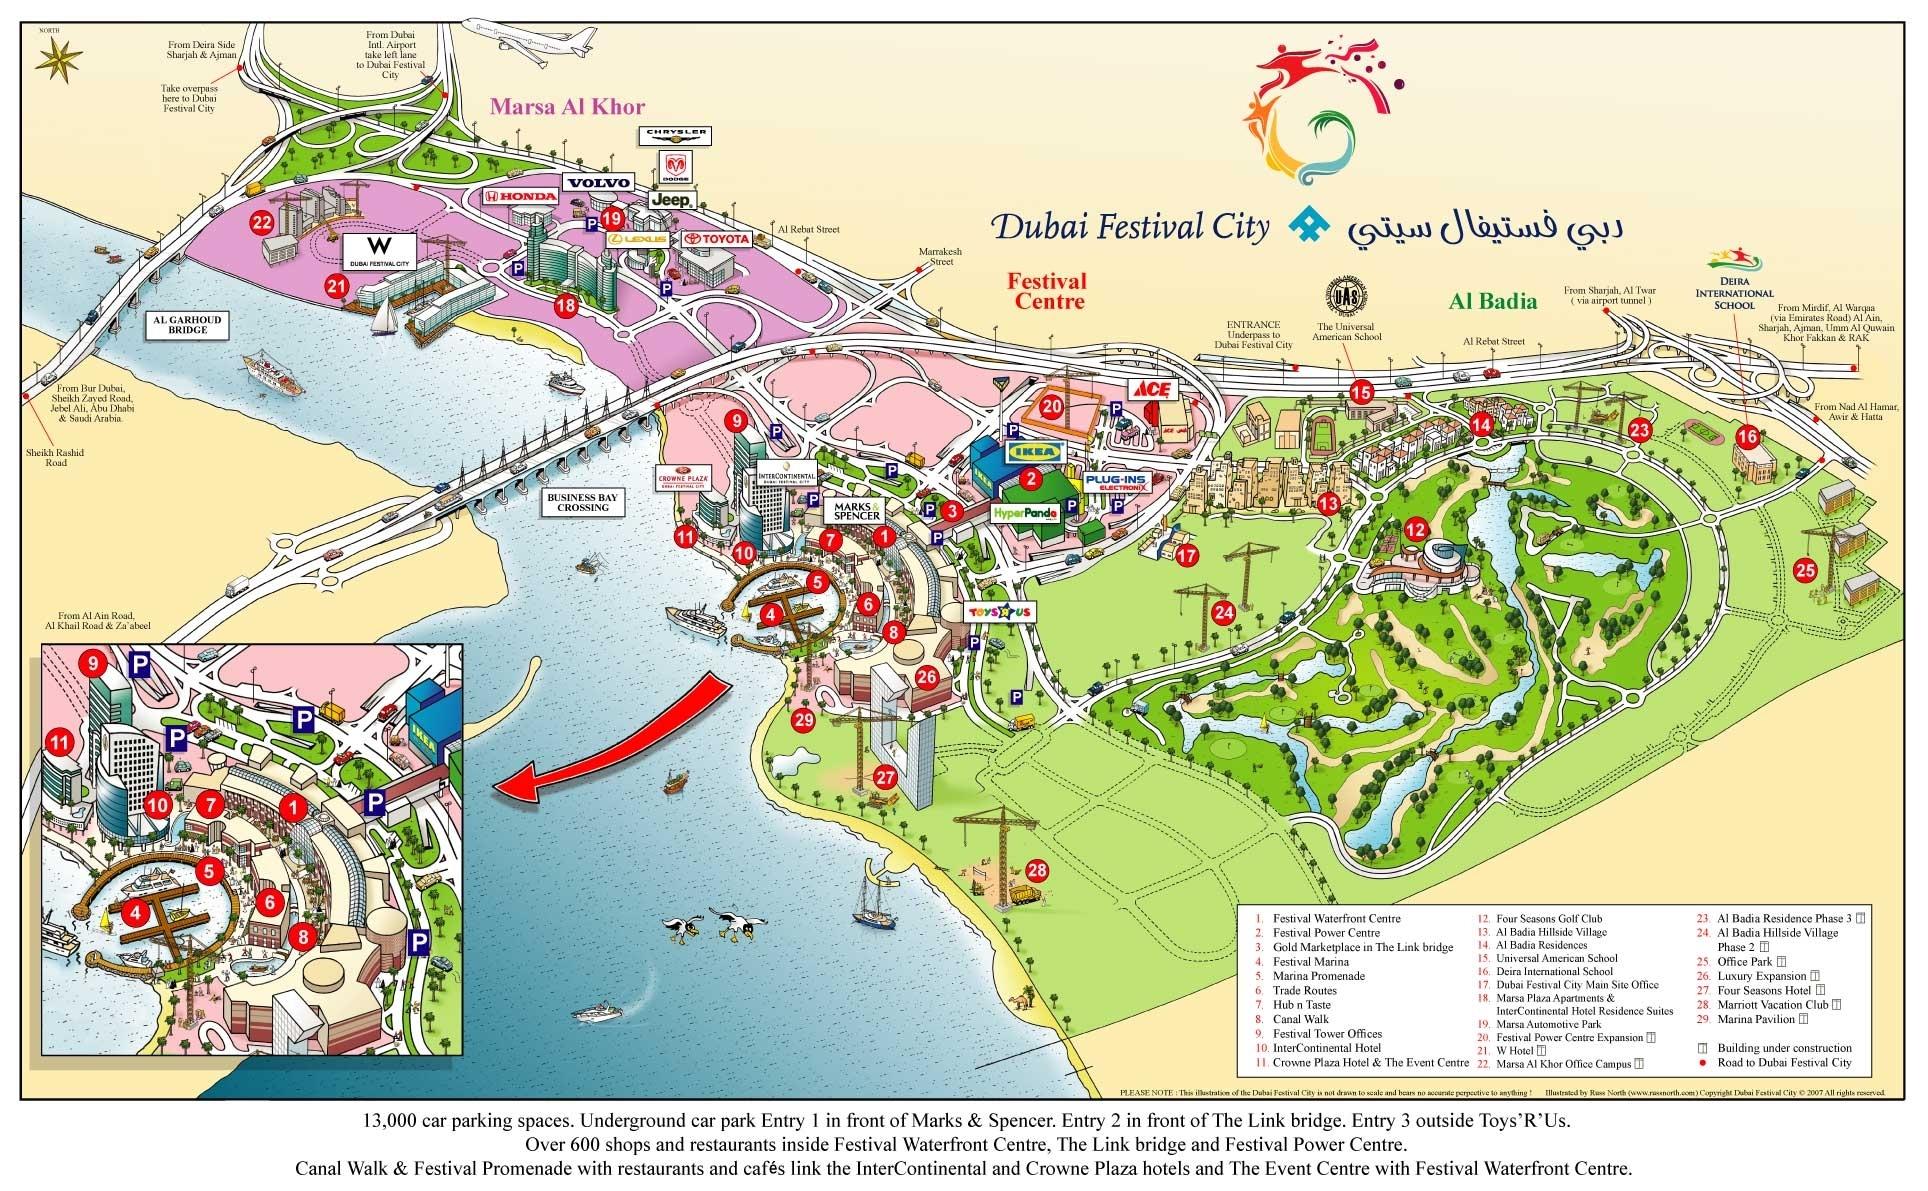 dubai térkép Dubai festival city mall térkép   Dubai festival city térkép  dubai térkép